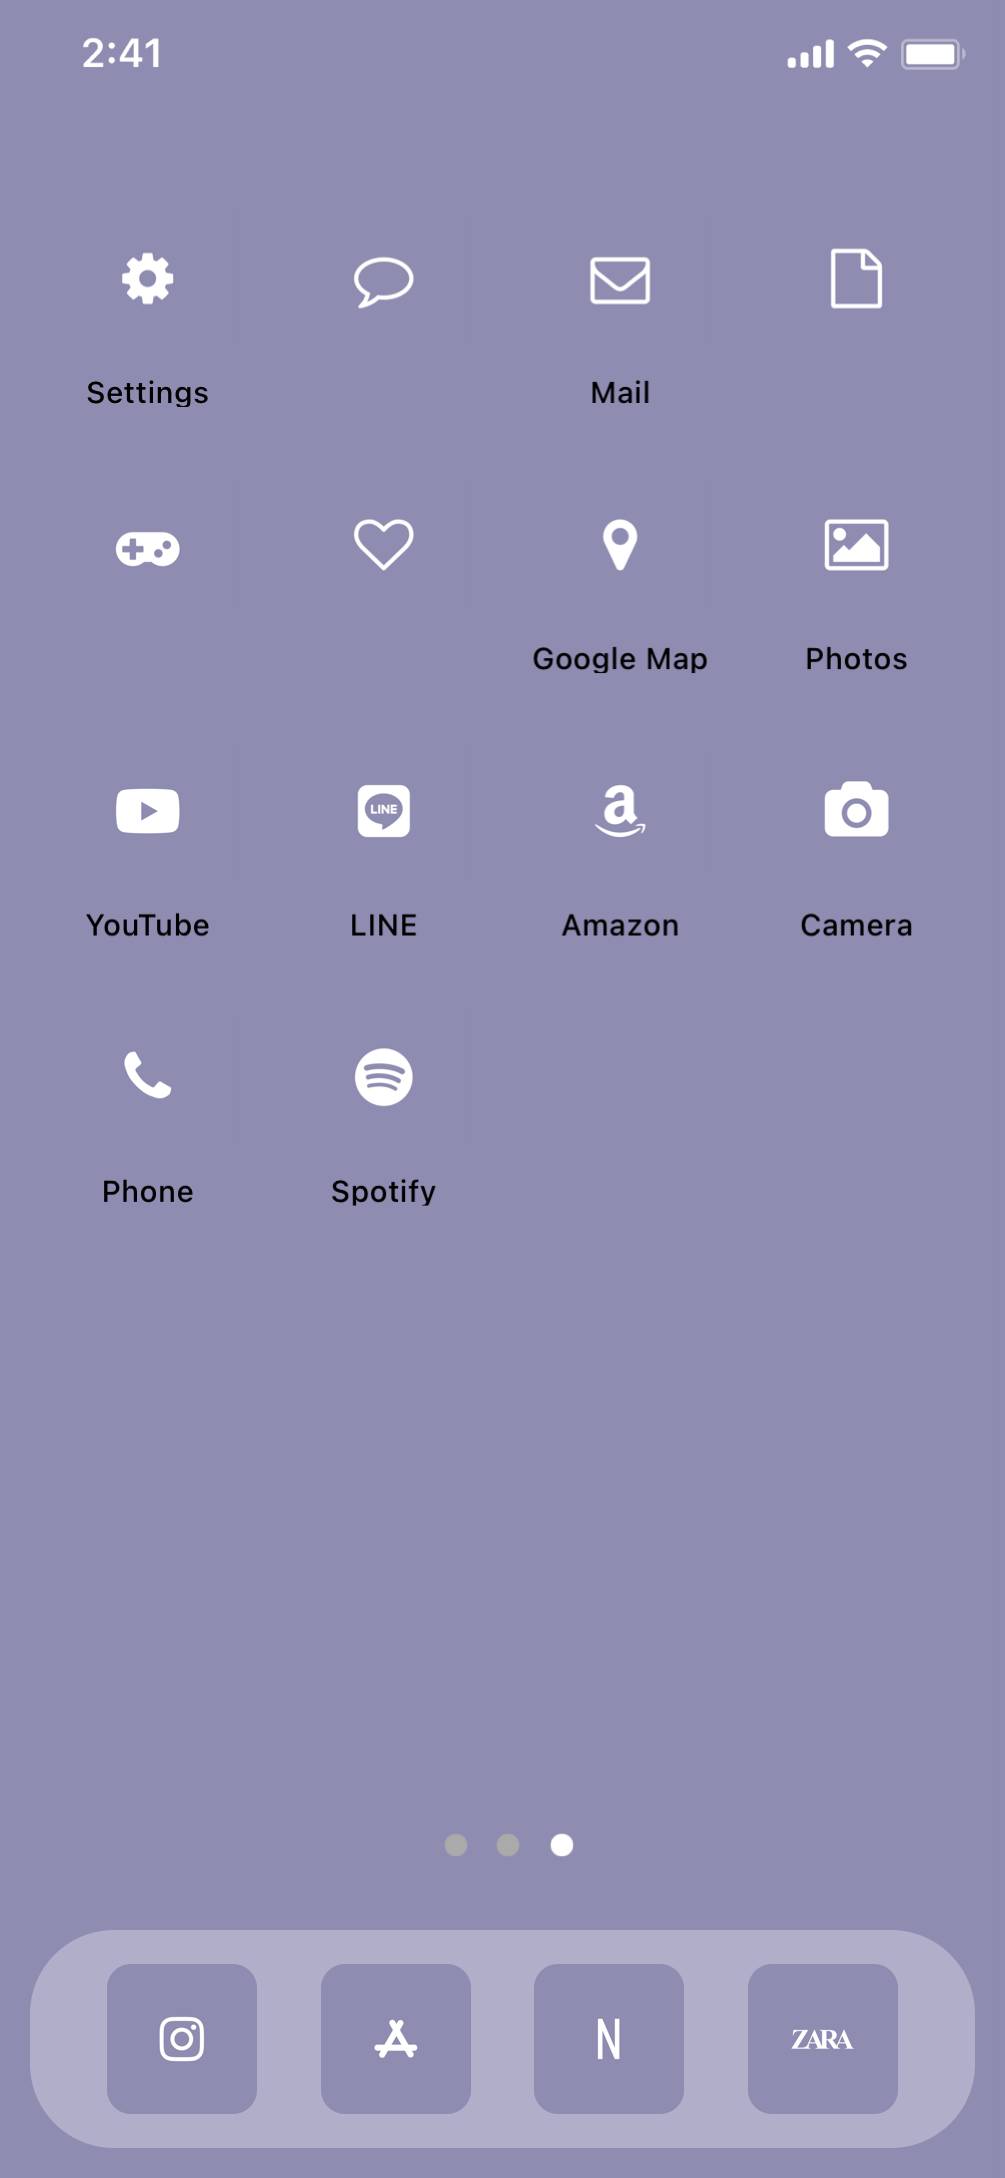 Purple simple home screenНүүр дэлгэцийн санаанууд[B5JqtA5HEh9P2xki6YJz]